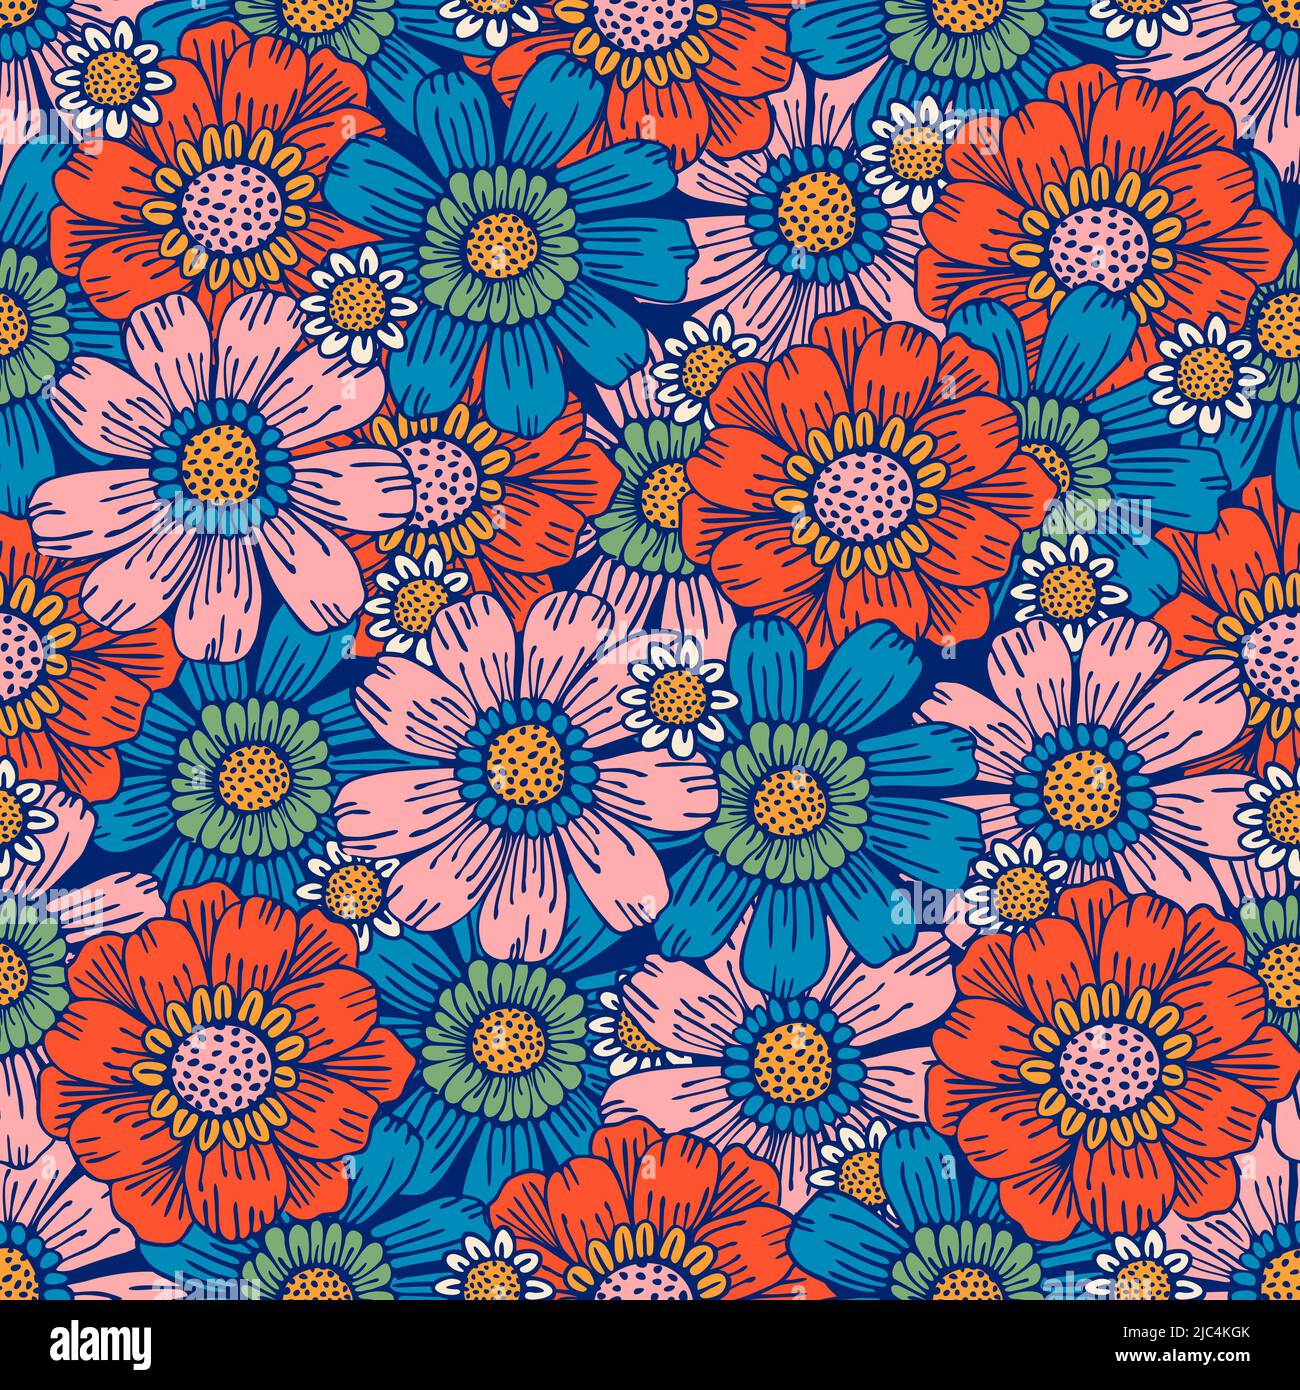 Free: Blue flower icon, 1960s Hippie Flower power , Hippie Art